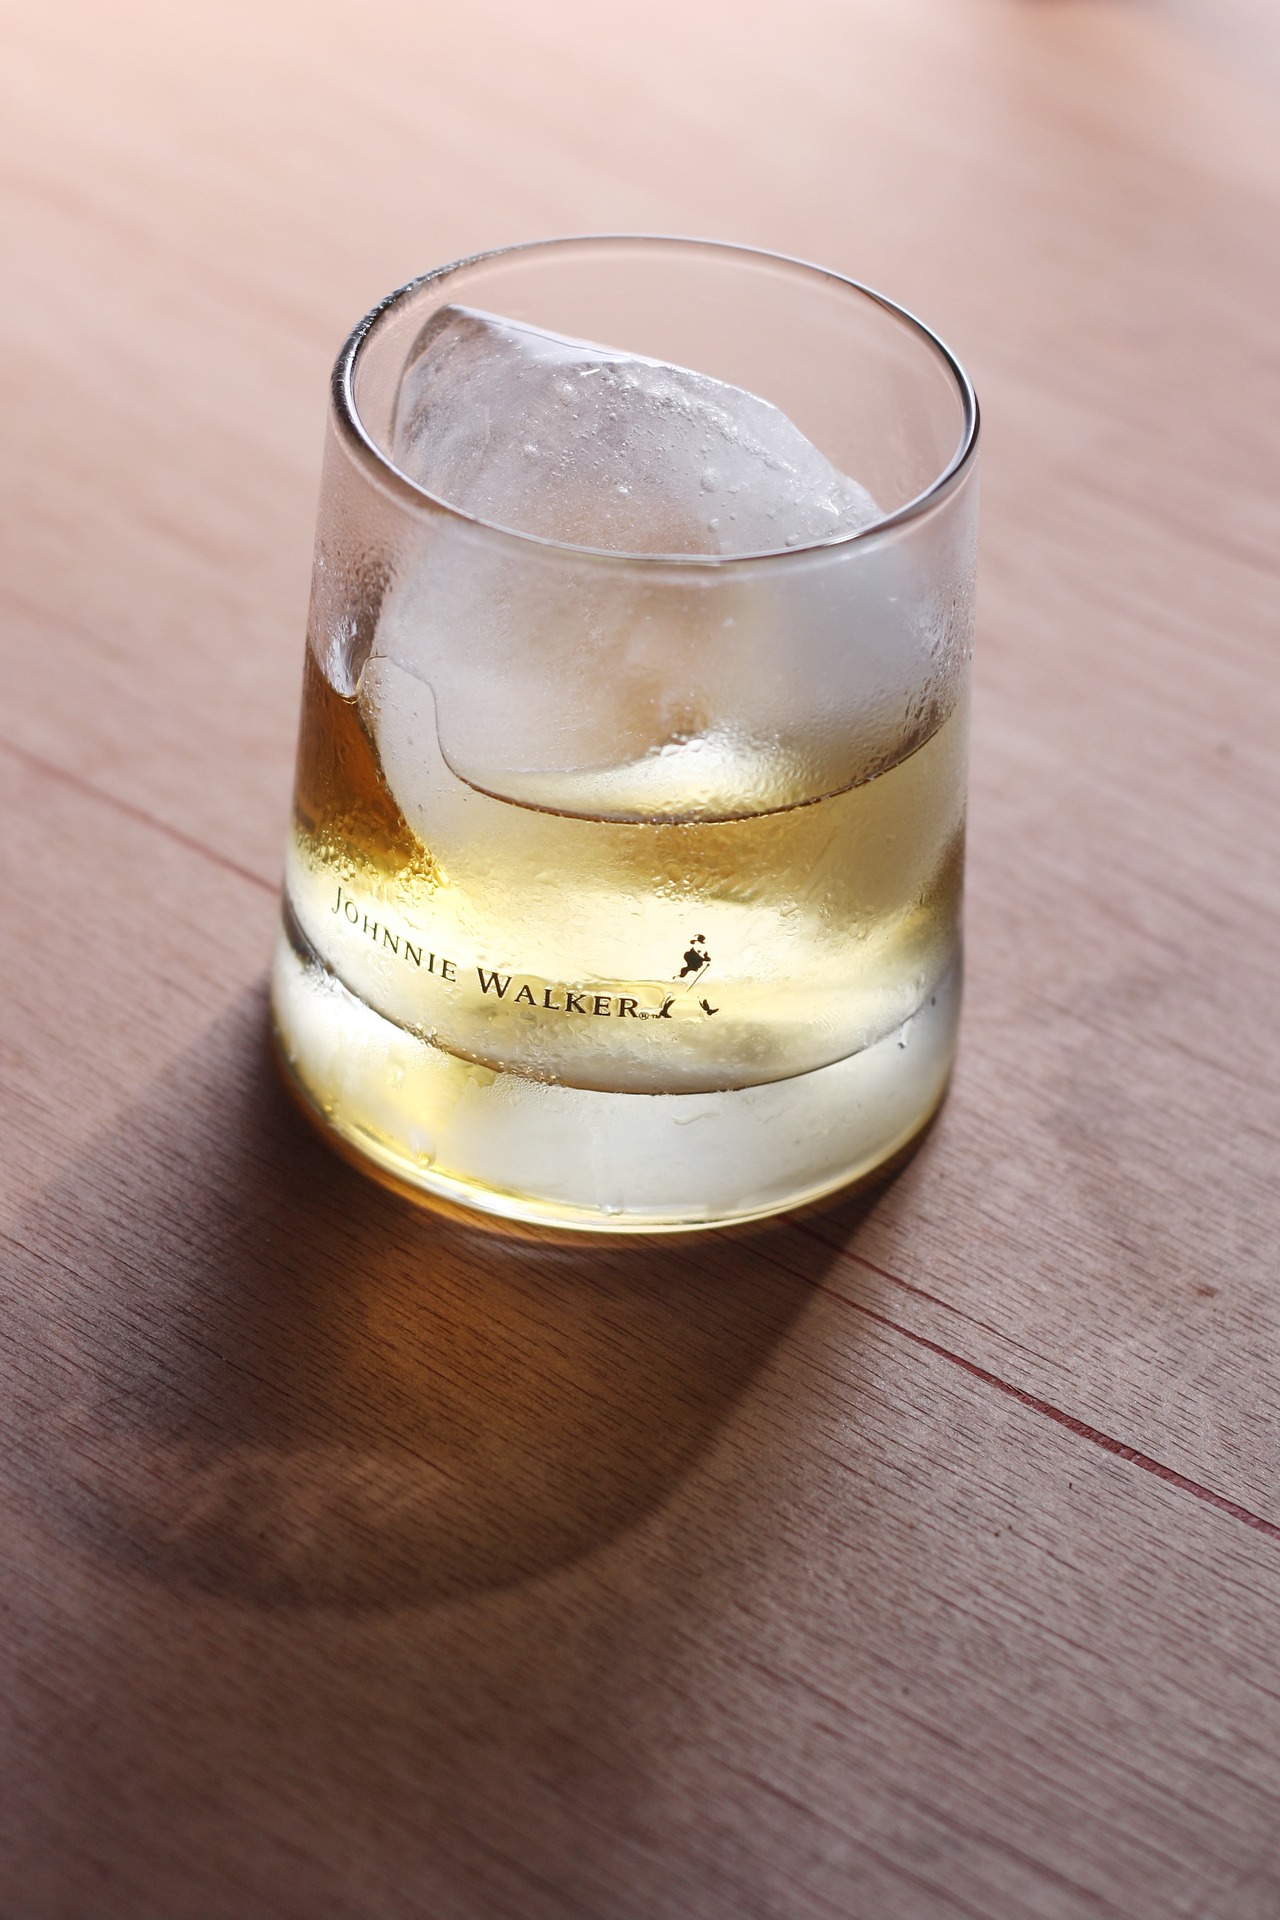 Whisky White Walker by Johnnie Walker Whisky Scozzese Blended